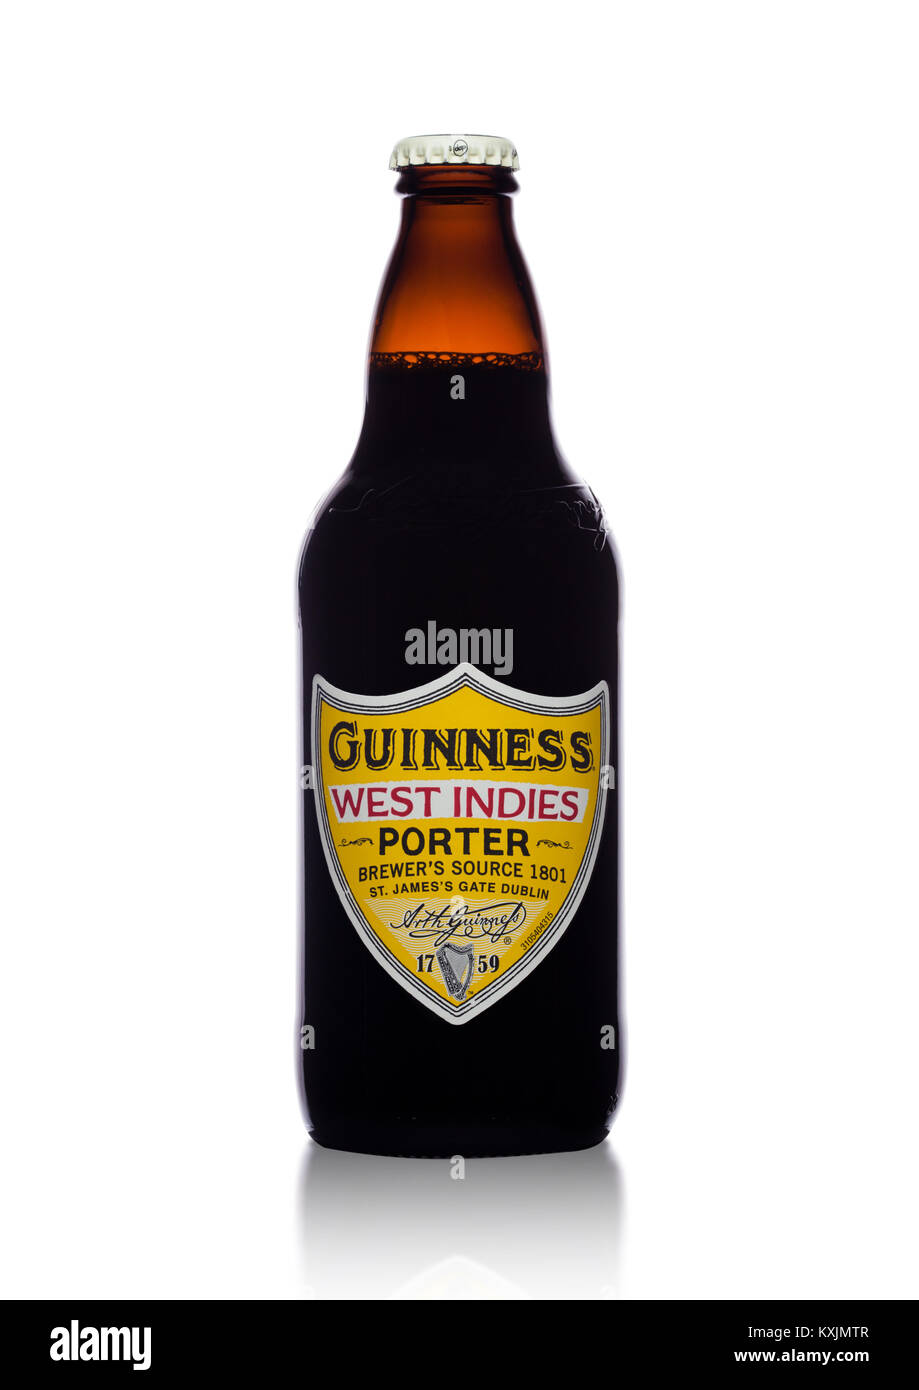 Londres, Reino Unido - 02 de enero de 2018: una botella de cerveza Guinness West Indies porter sobre fondo blanco. La cerveza Guinness se ha producido desde 1759 en Dublín. Foto de stock